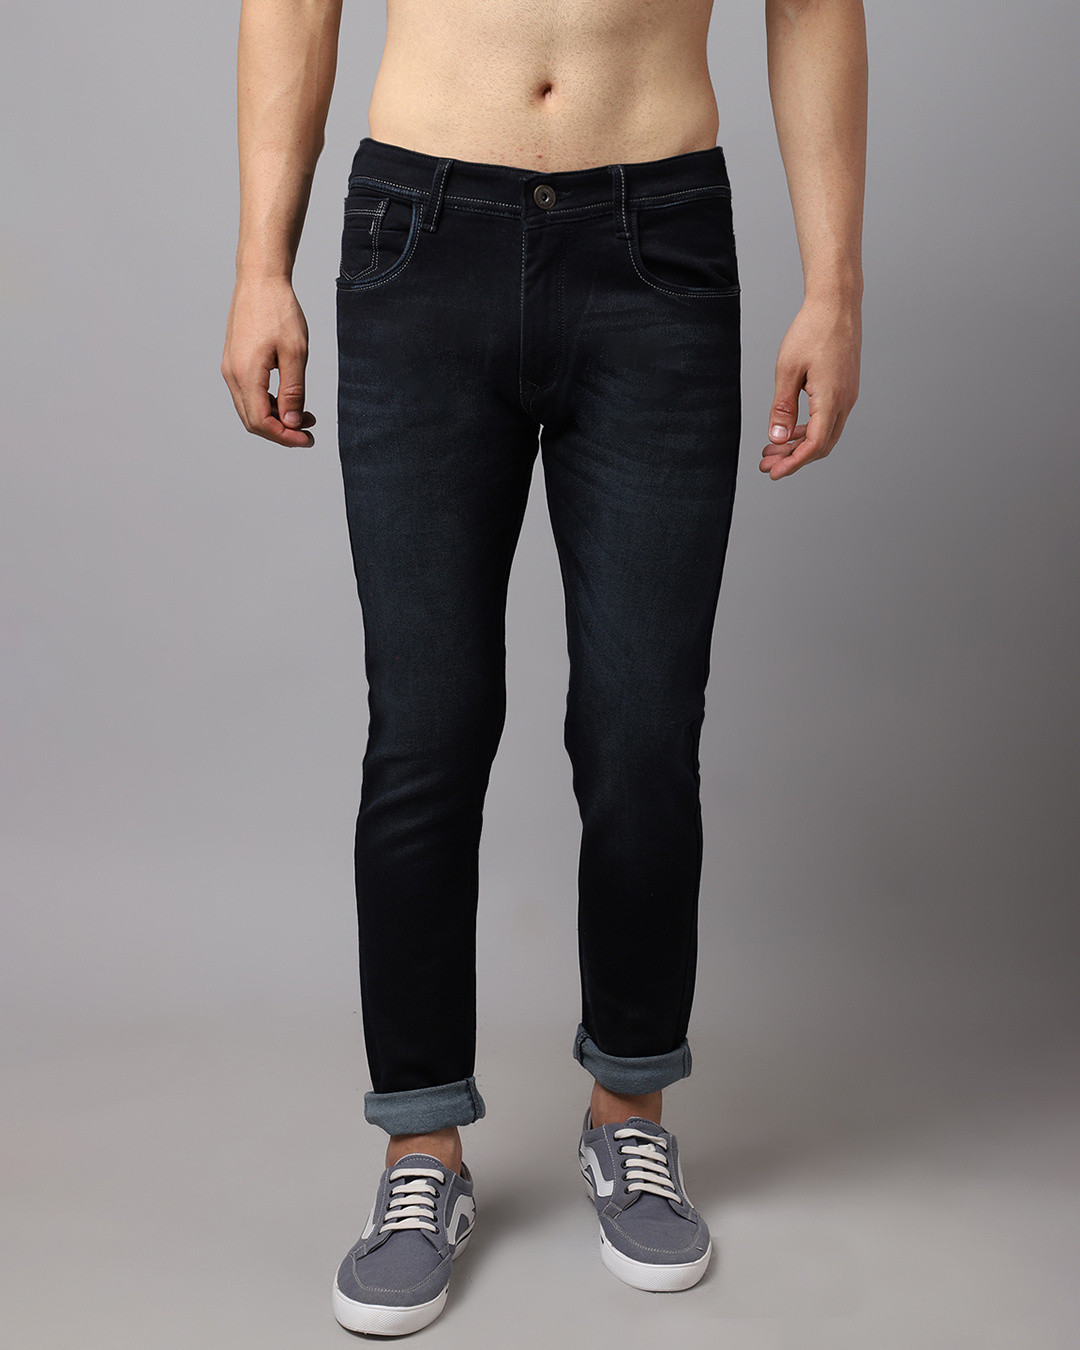 Buy Men's Black Washed Slim Fit Jeans for Men Black Online at Bewakoof